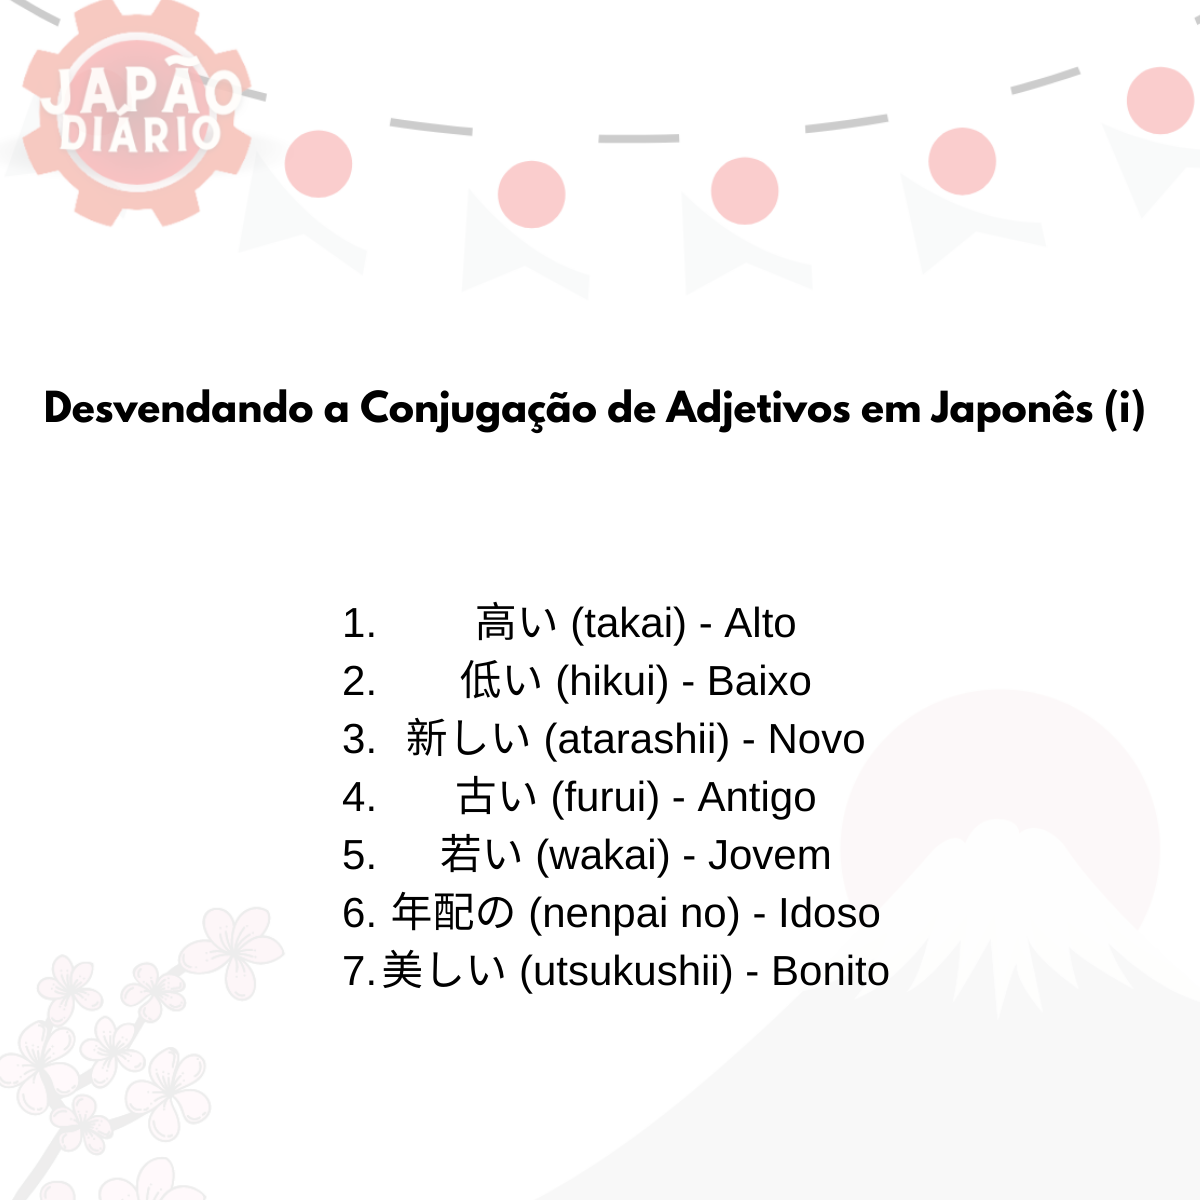 You are currently viewing Adjetivos em Japonês Desvendando a Conjugação